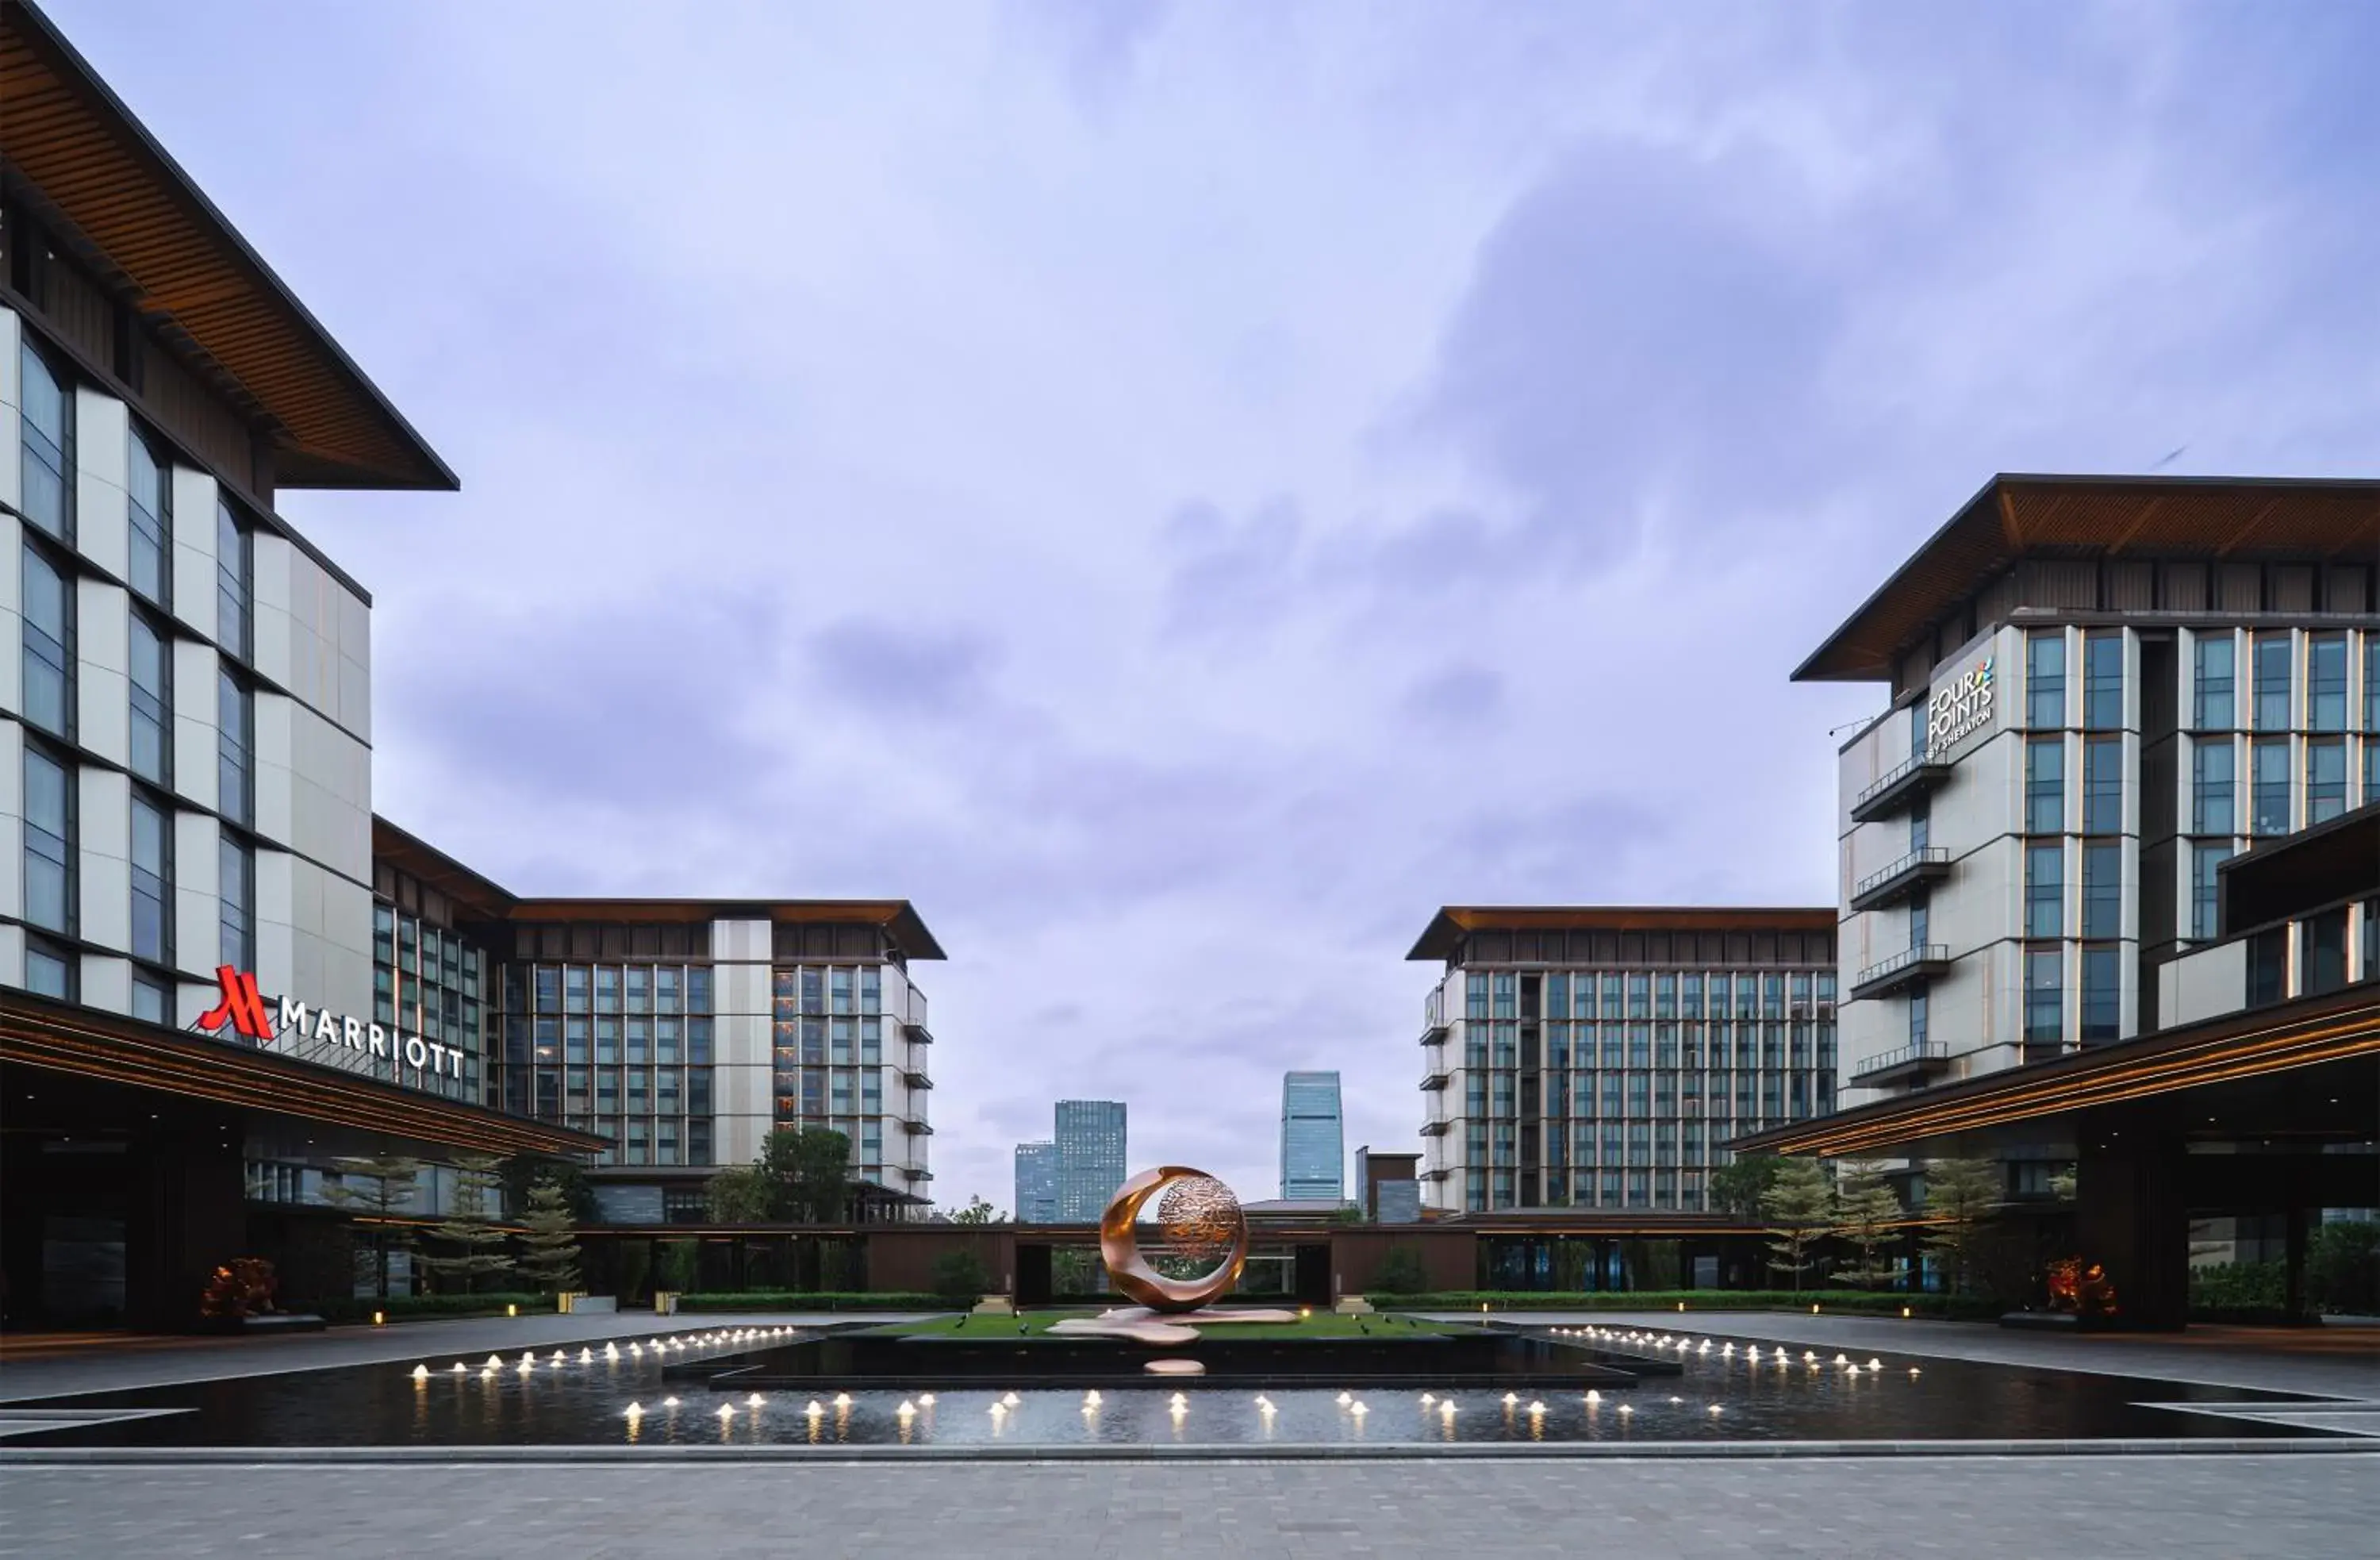 Property building in Guangzhou Marriott Hotel Baiyun